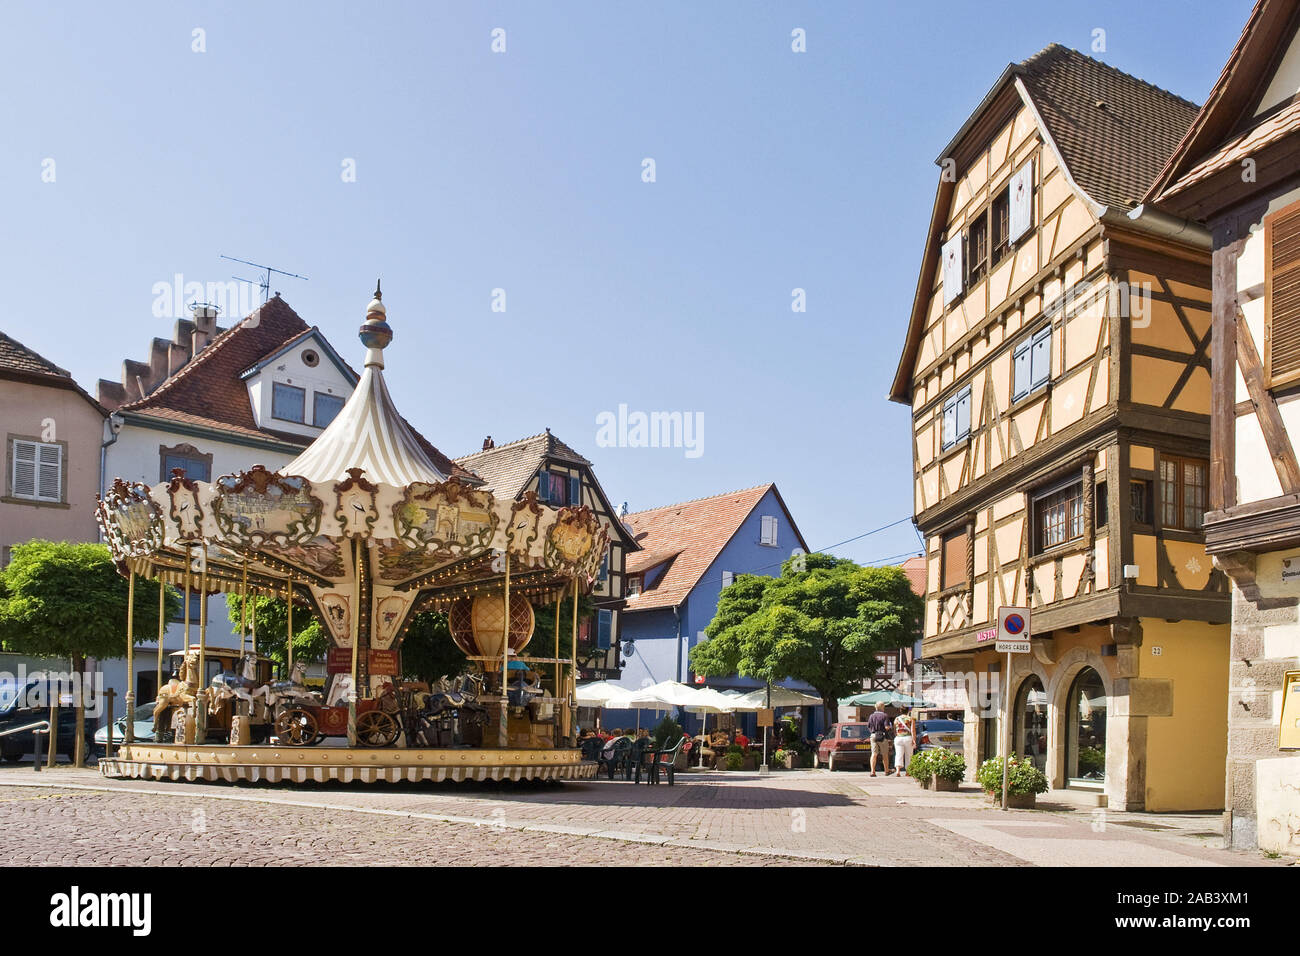 Karusell vor Fachwerkhäusern in der Altstadt von Obernai |Carrousel avant de maisons à colombages de la vieille ville d'Obernai| Banque D'Images